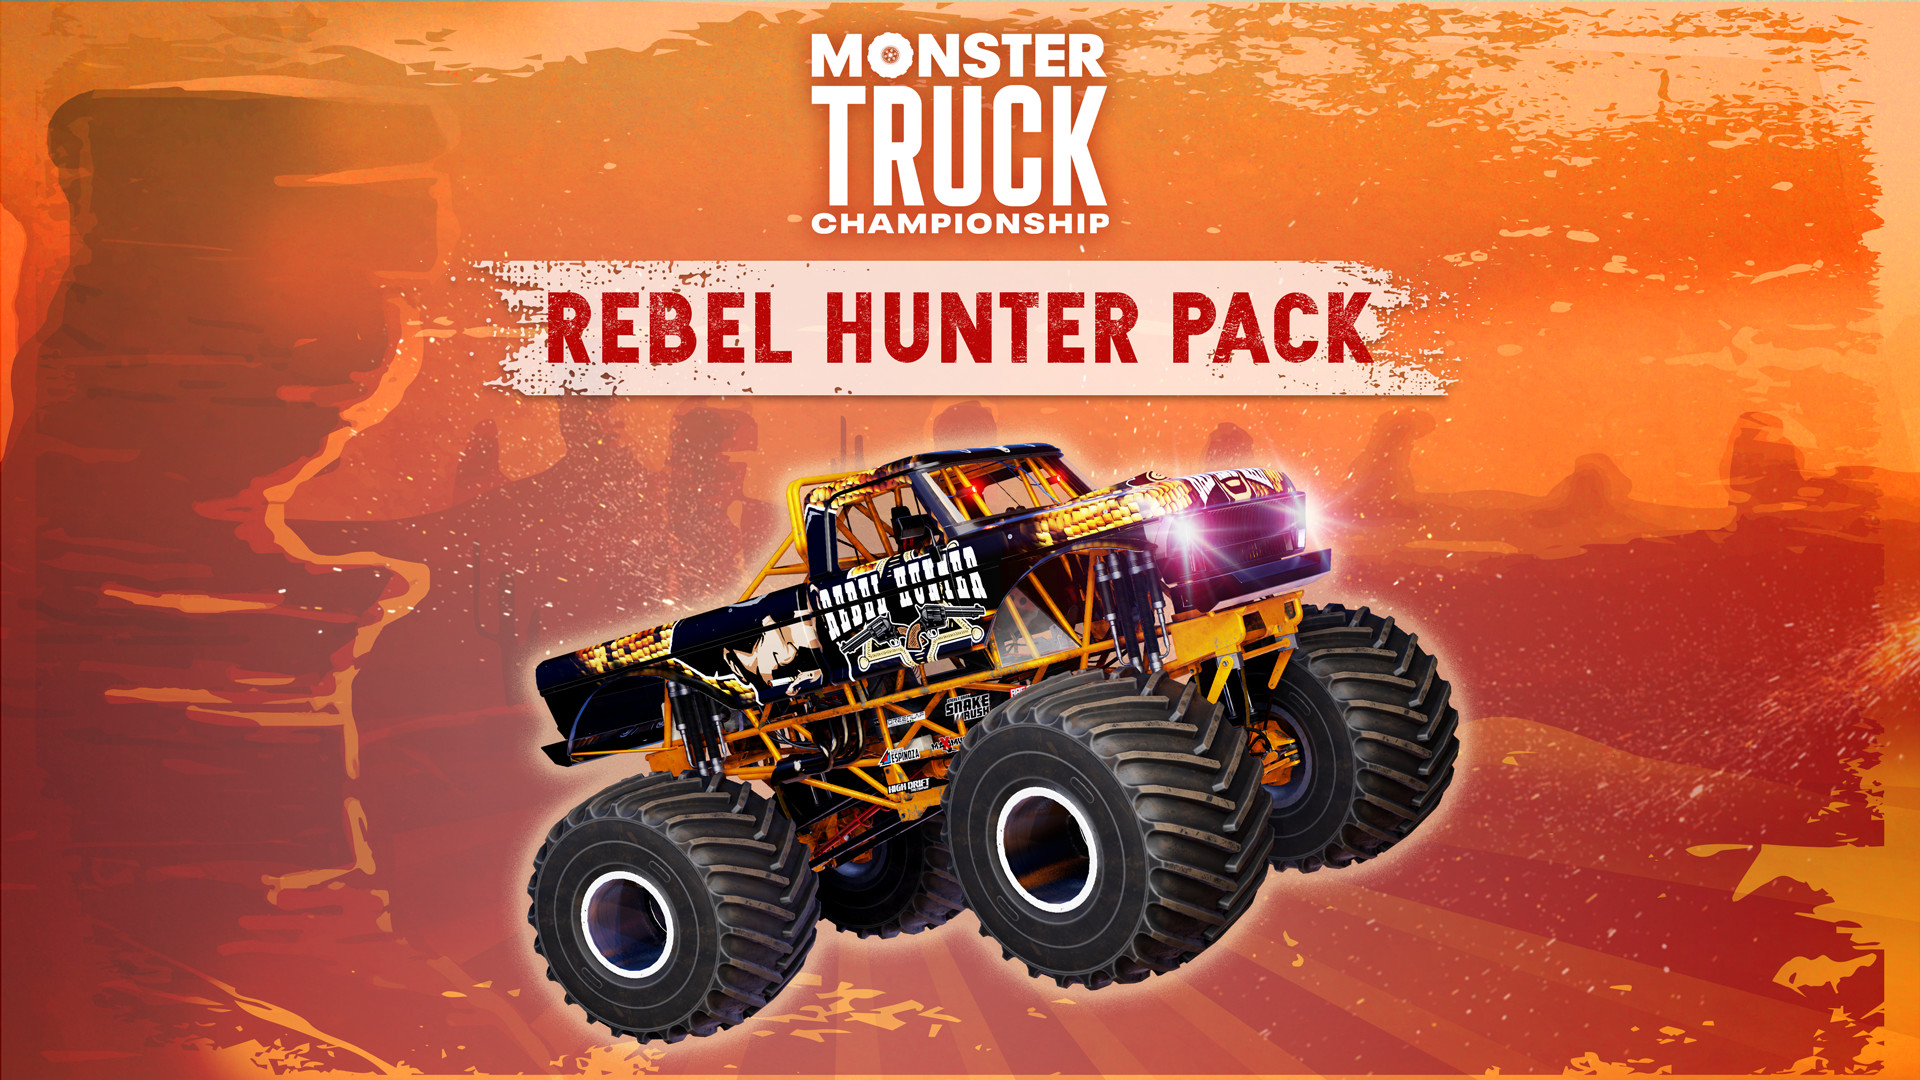 Monster Truck Championship - Rebel Hunter Pack DLC Steam CD Key 10.16 USD